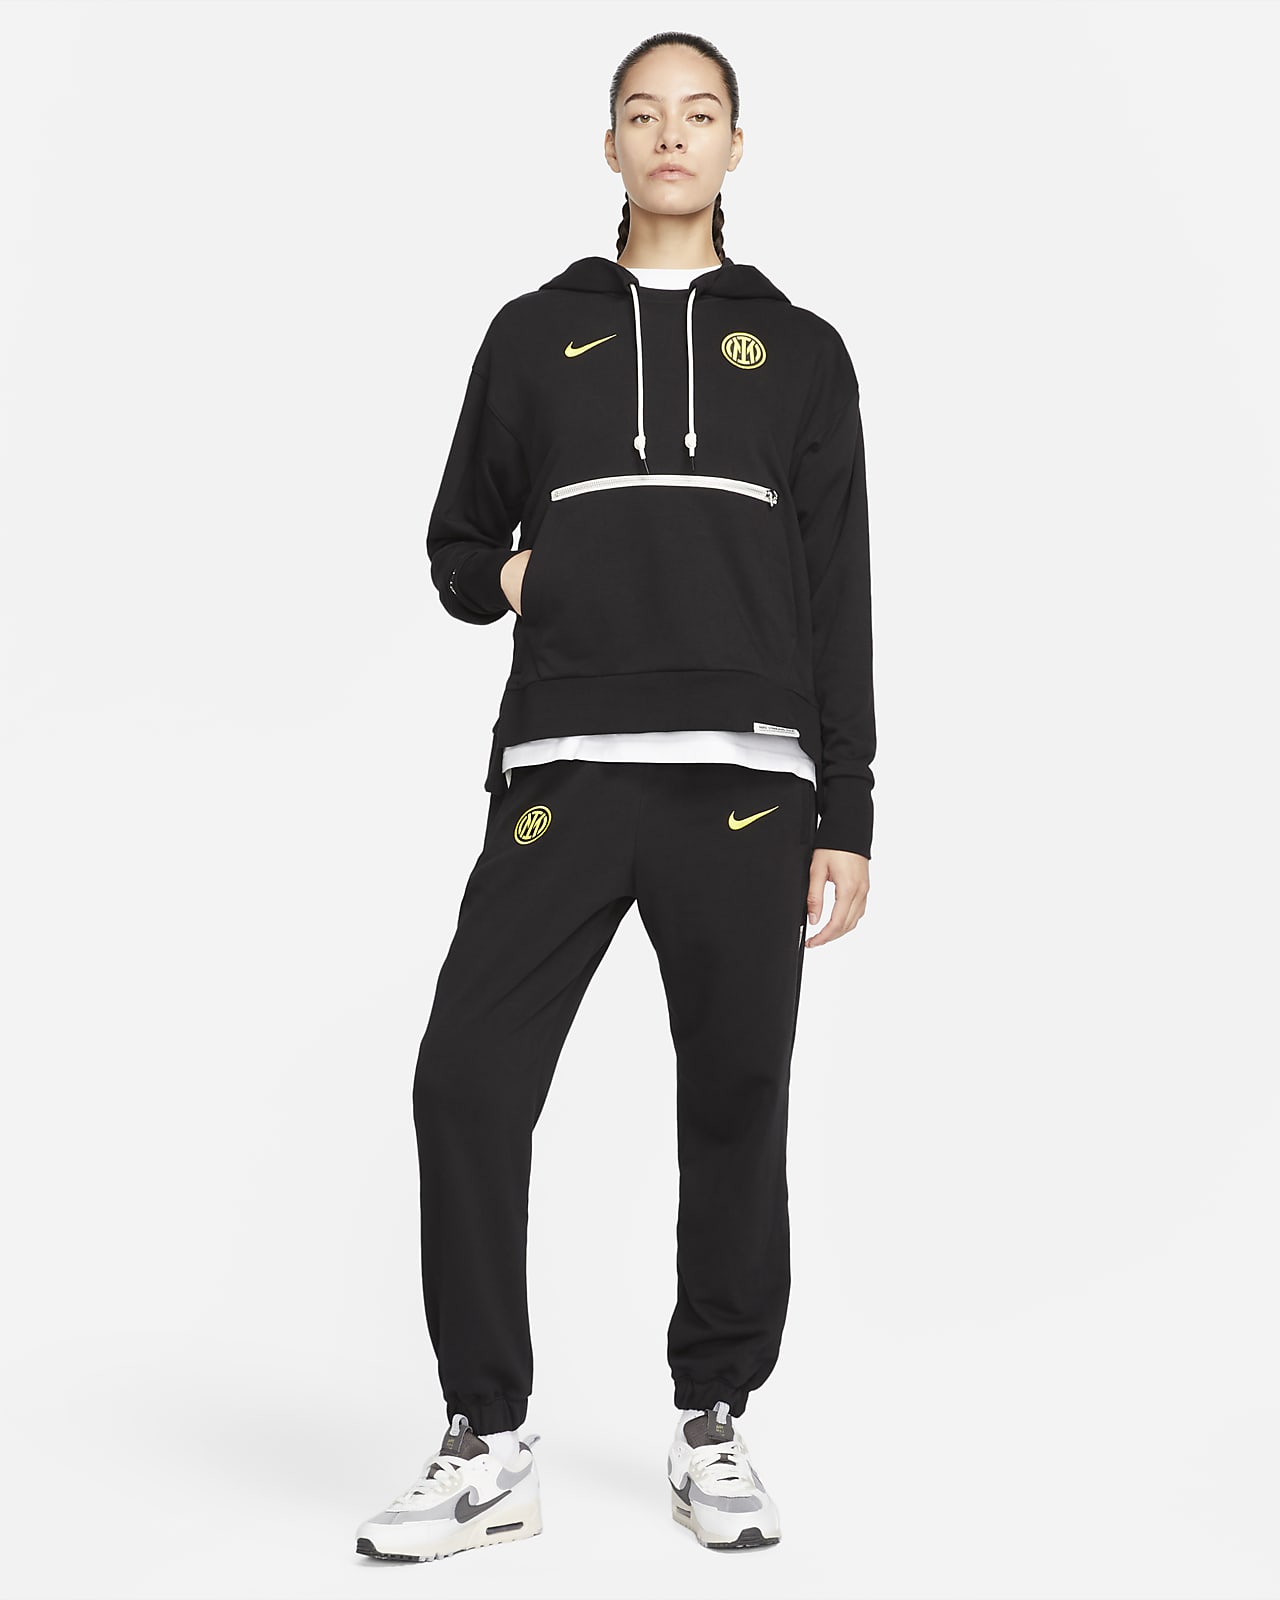 Felpa pullover con cappuccio Nike Dri-FIT Inter Standard Issue – Donna